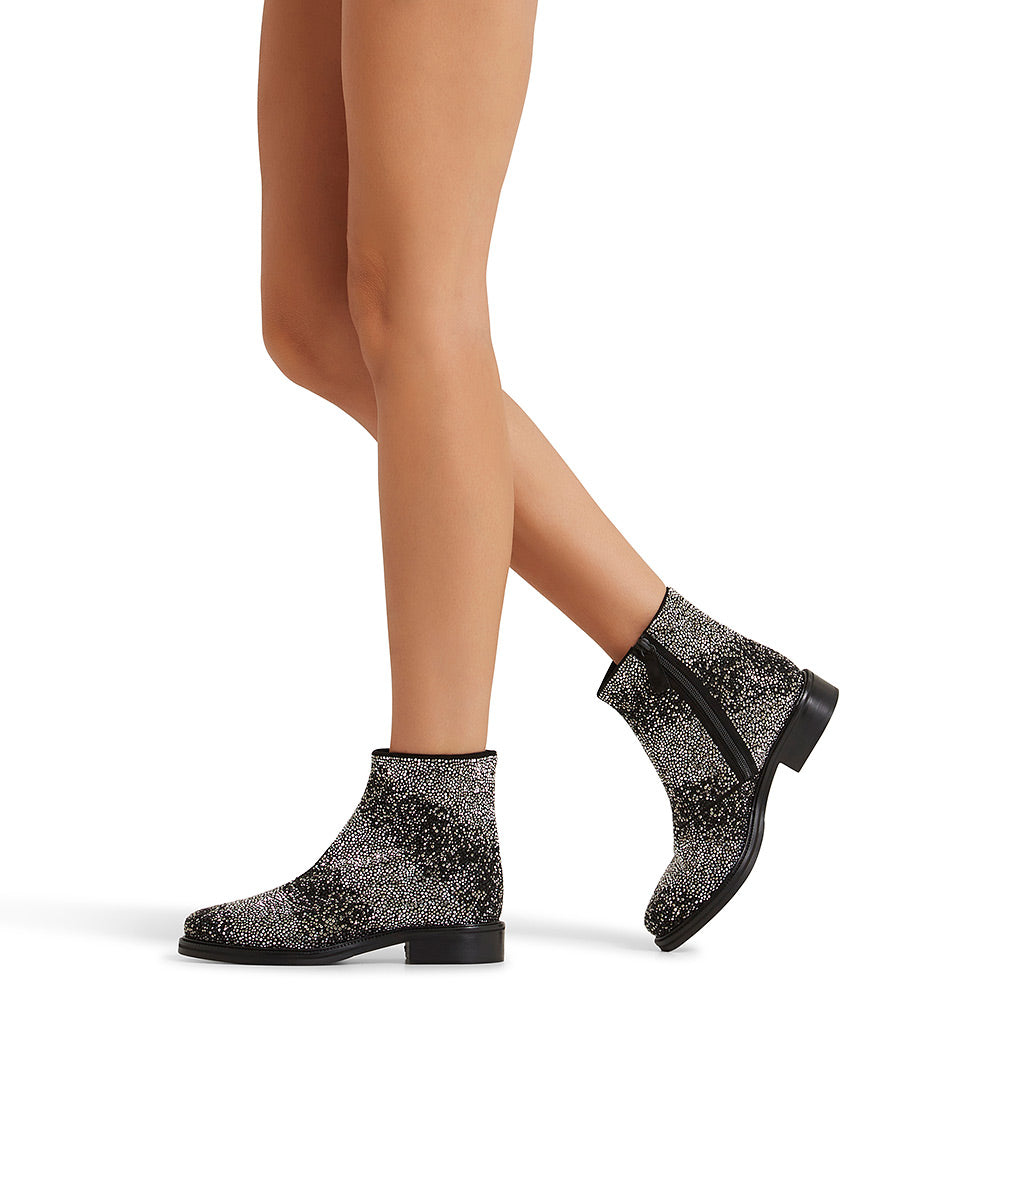 Crystal-embellished black suede ankle boots